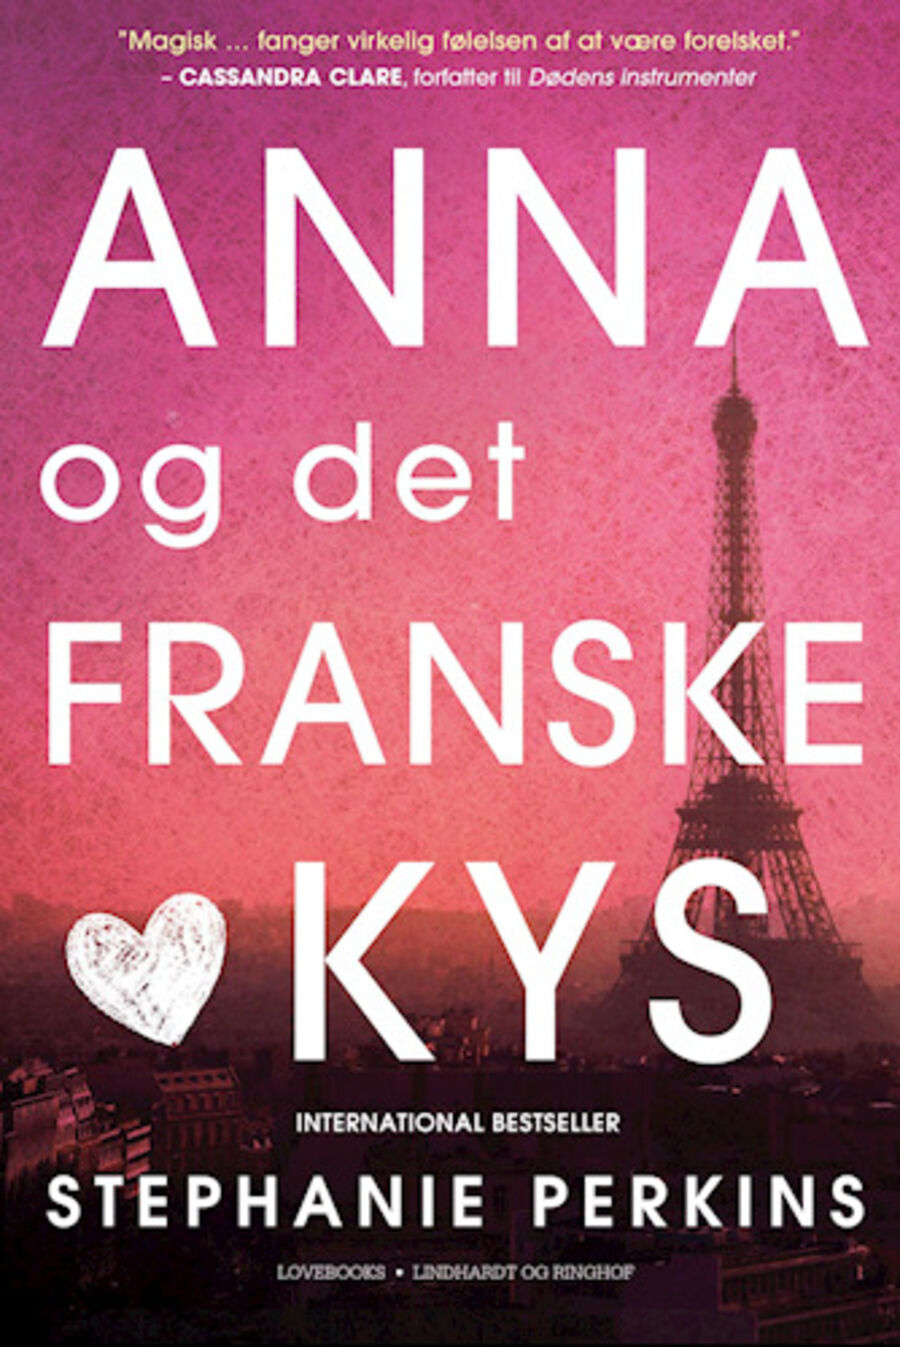 Anna og det franske kys